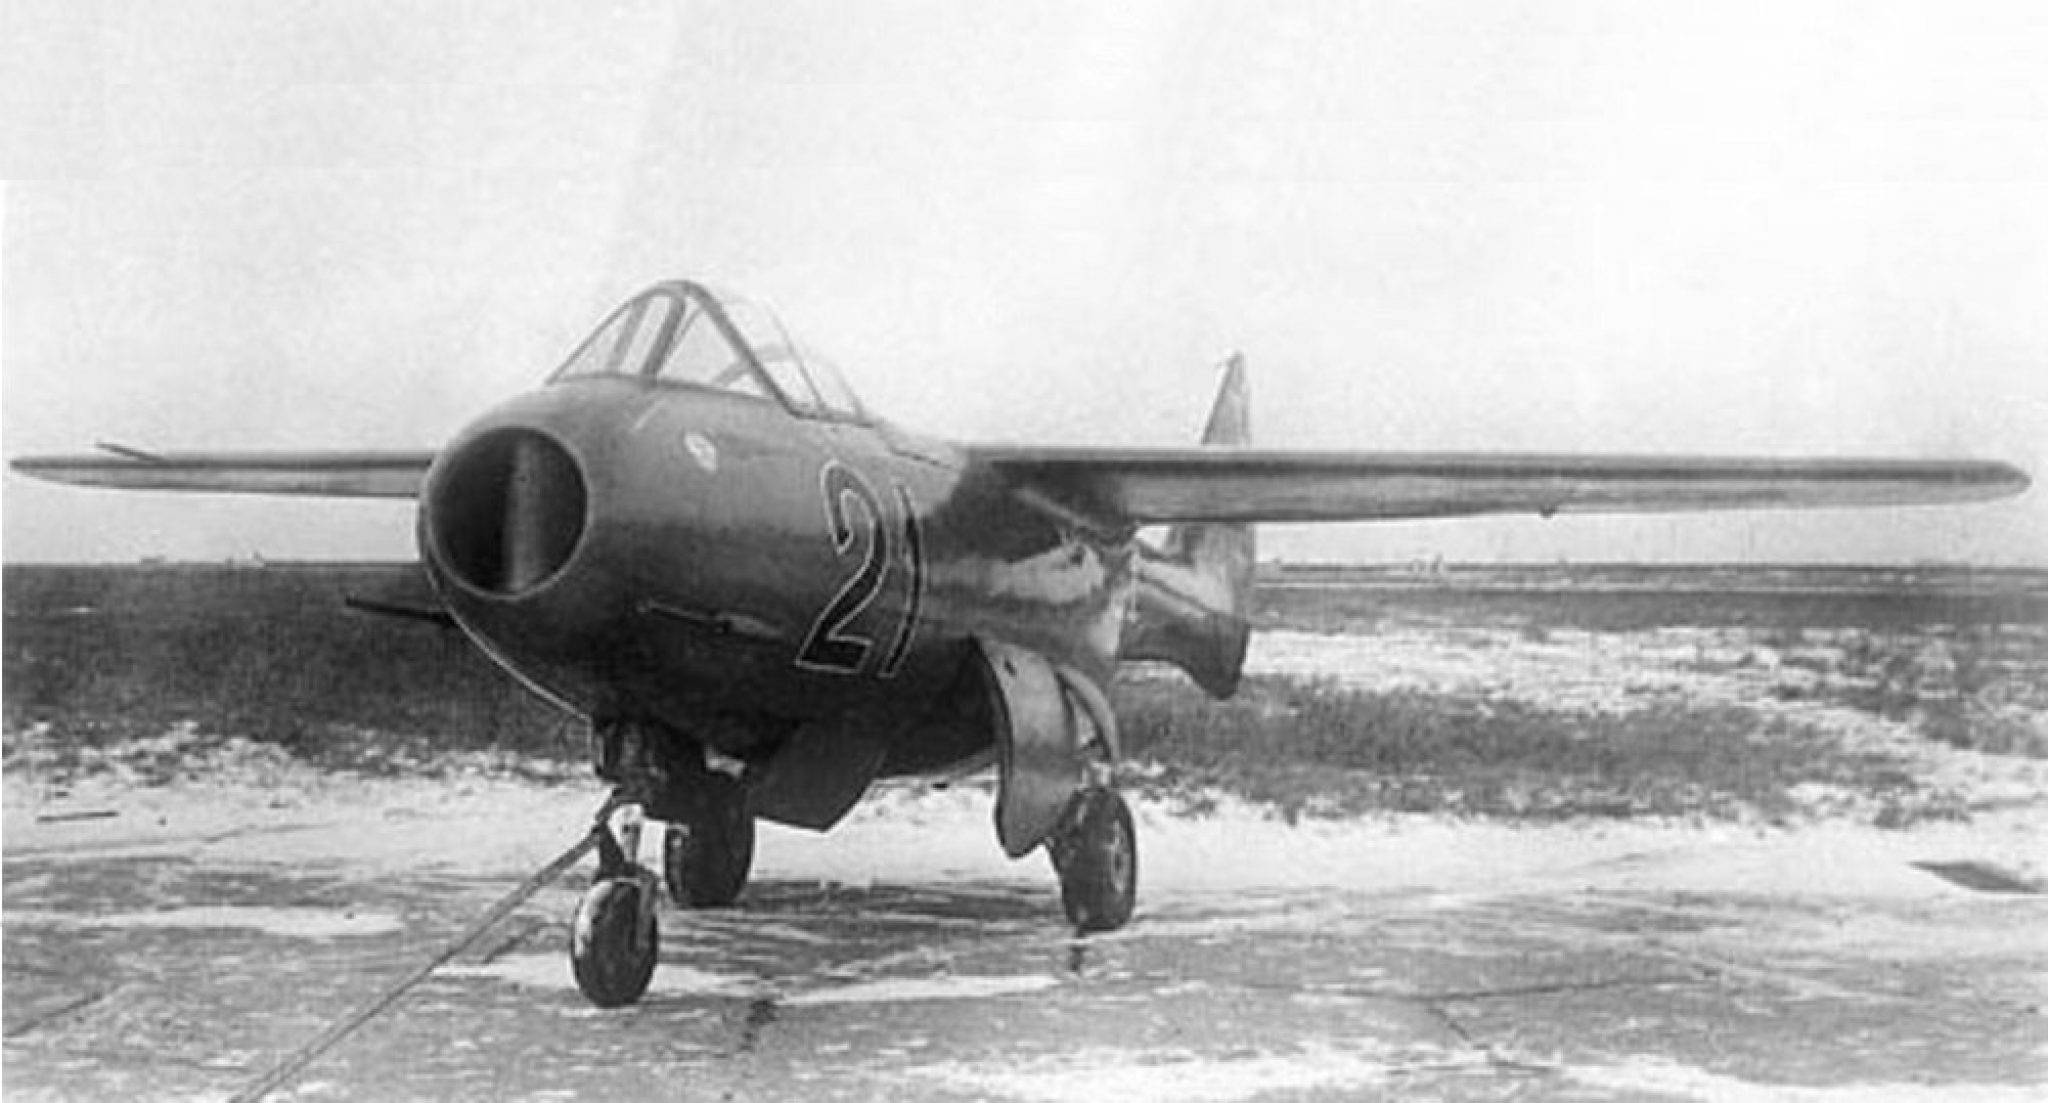 Лавочкин ла-152